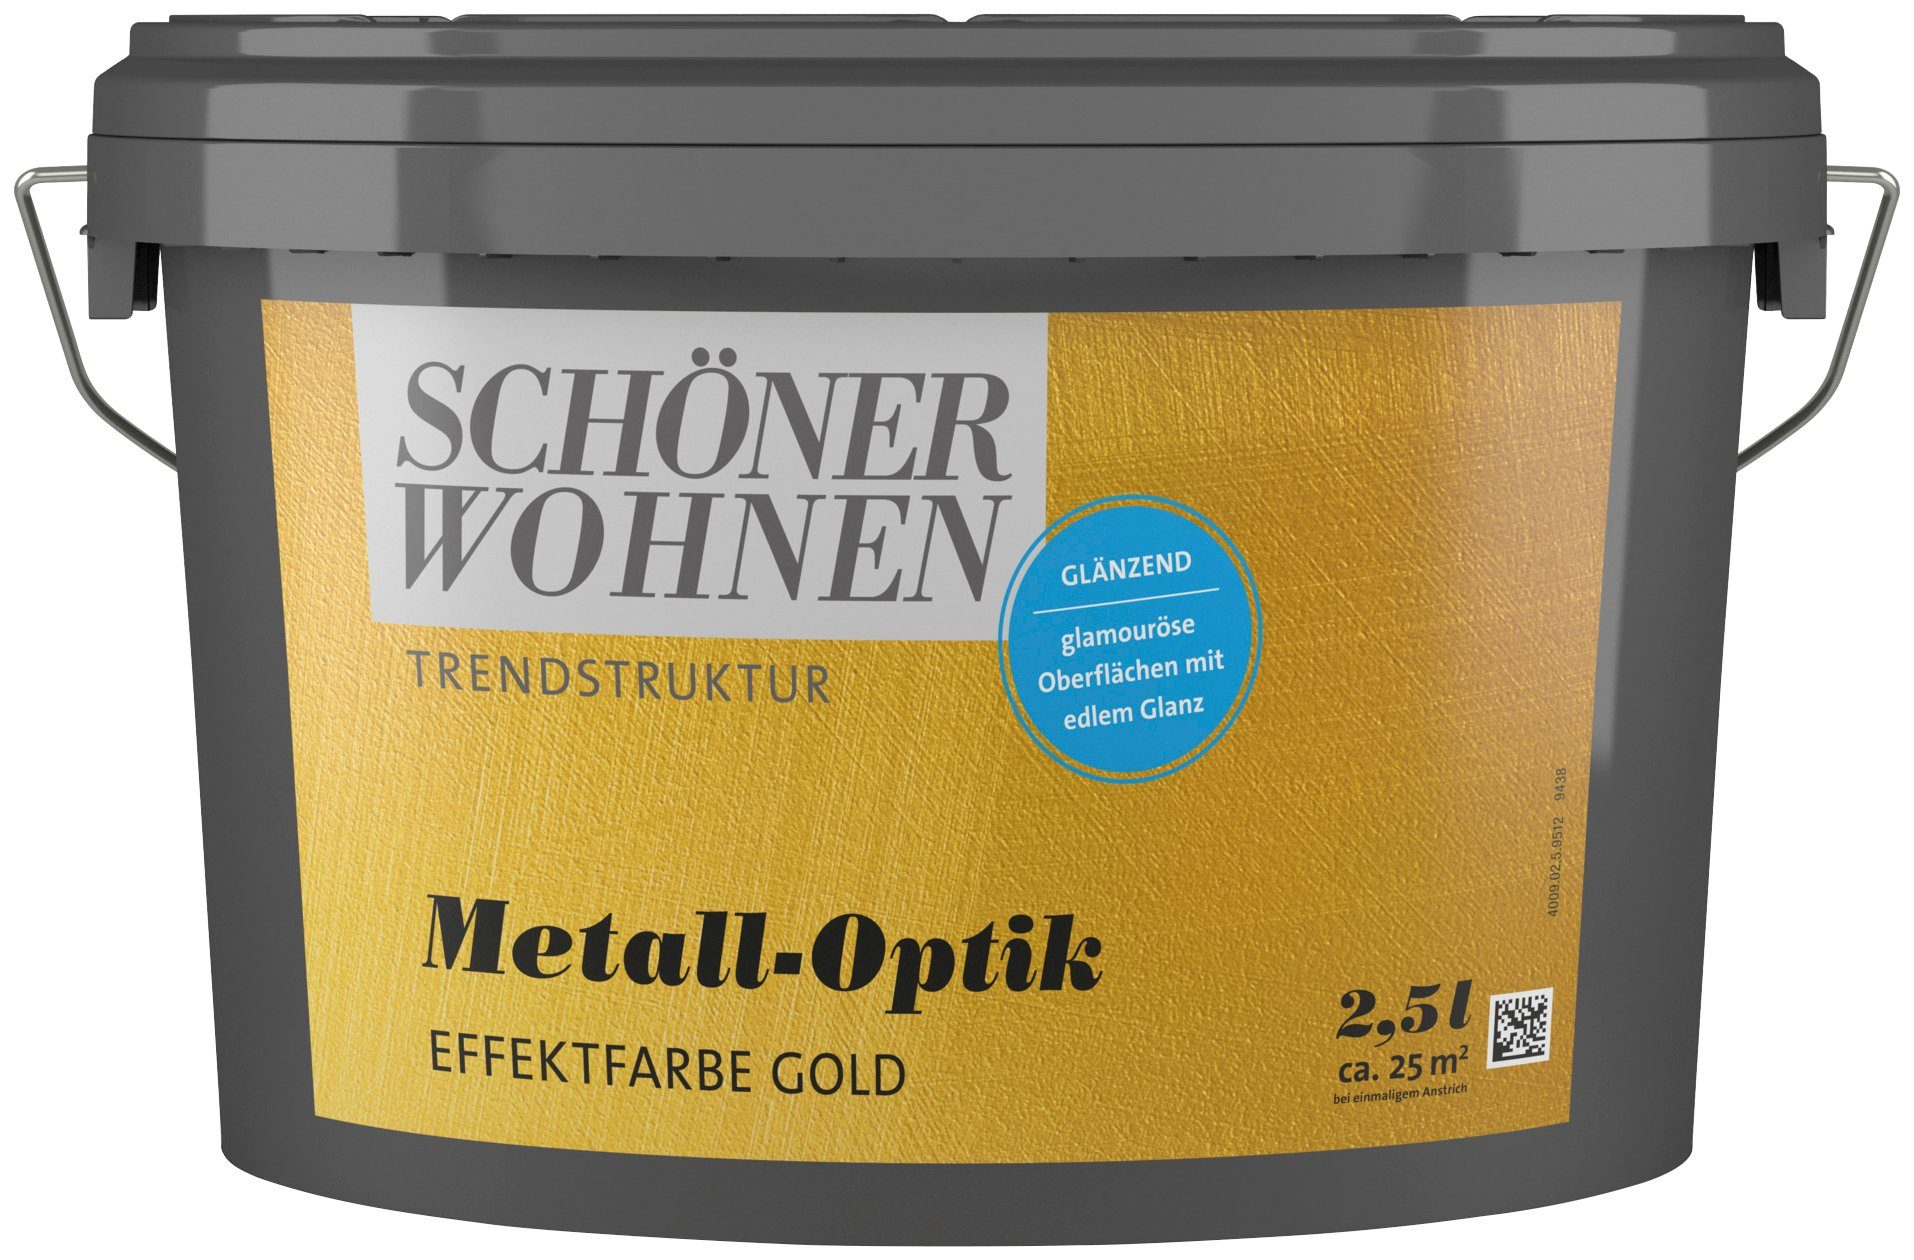 Metall-Optik 1 gold metallischen glänzende für Look WOHNEN TRENDSTRUKTUR Wandfarbe Effektfarbe Effektfarbe, Liter, FARBE SCHÖNER